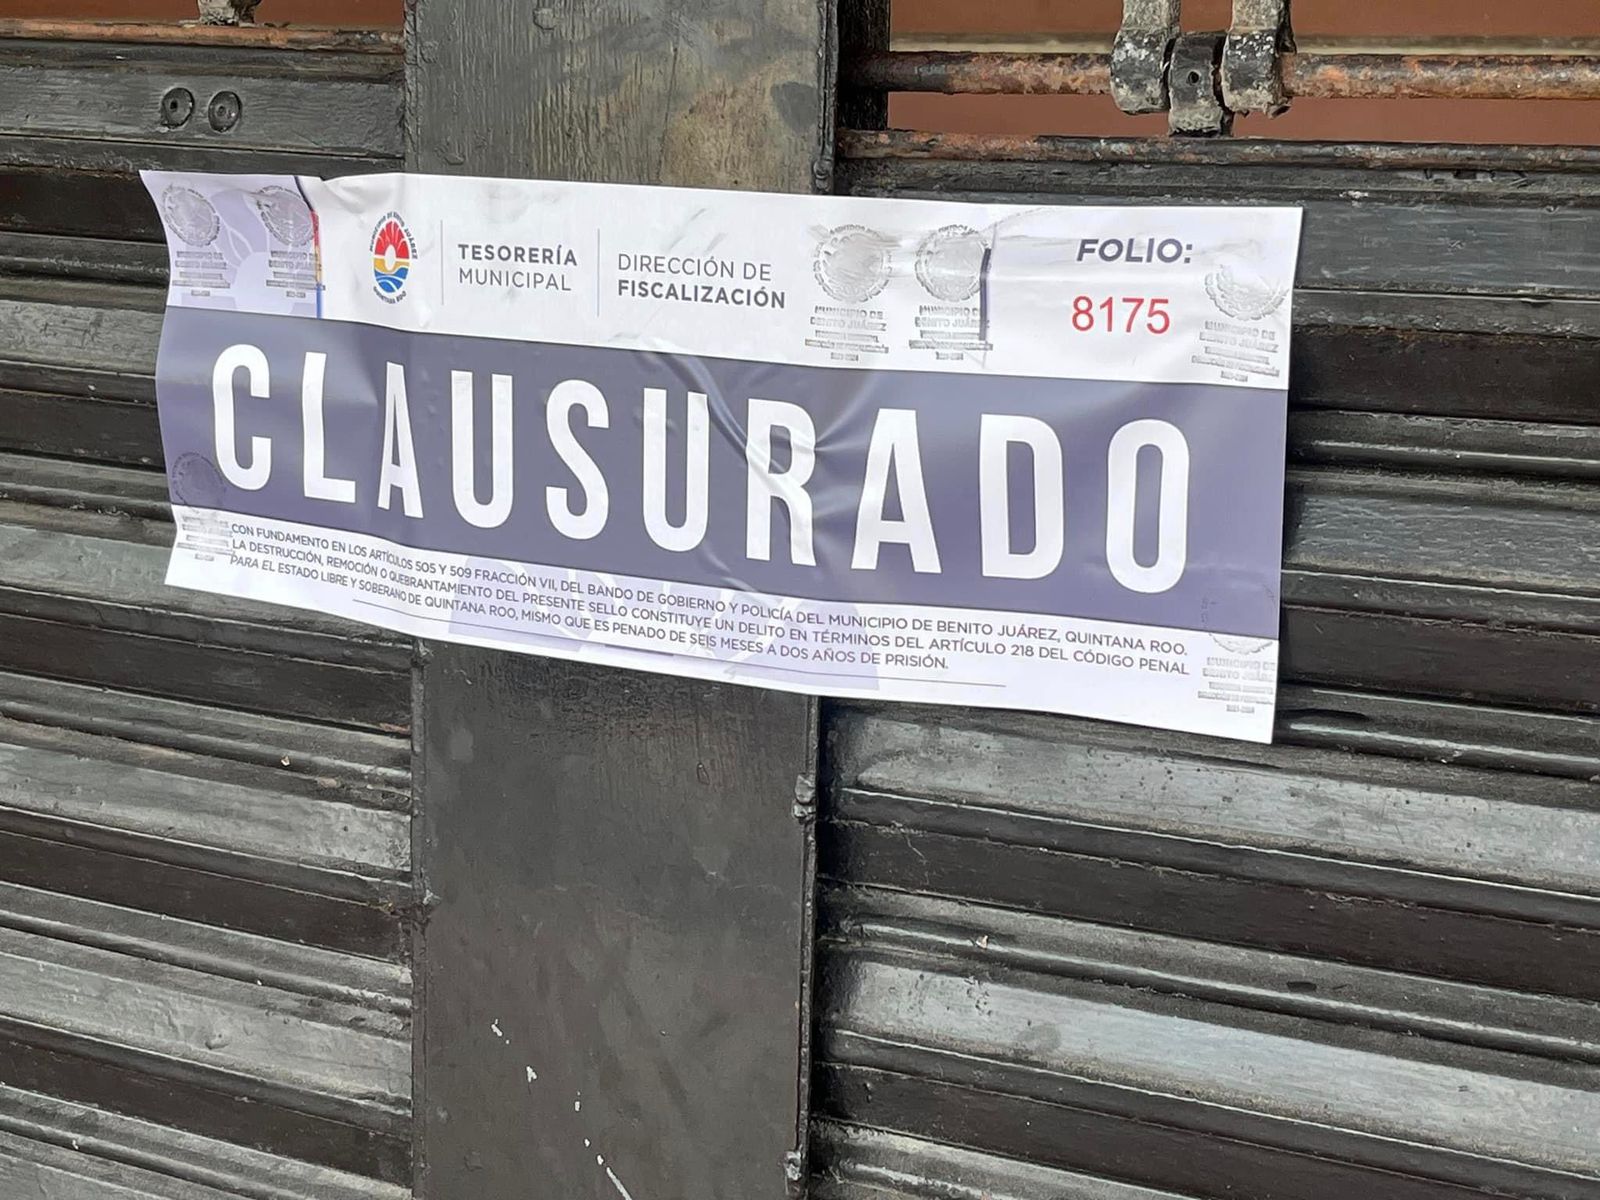 Confirma Aguilar Osorio que clausura de Plaza de Toros fue para evitar concierto que ‘genera violencia’